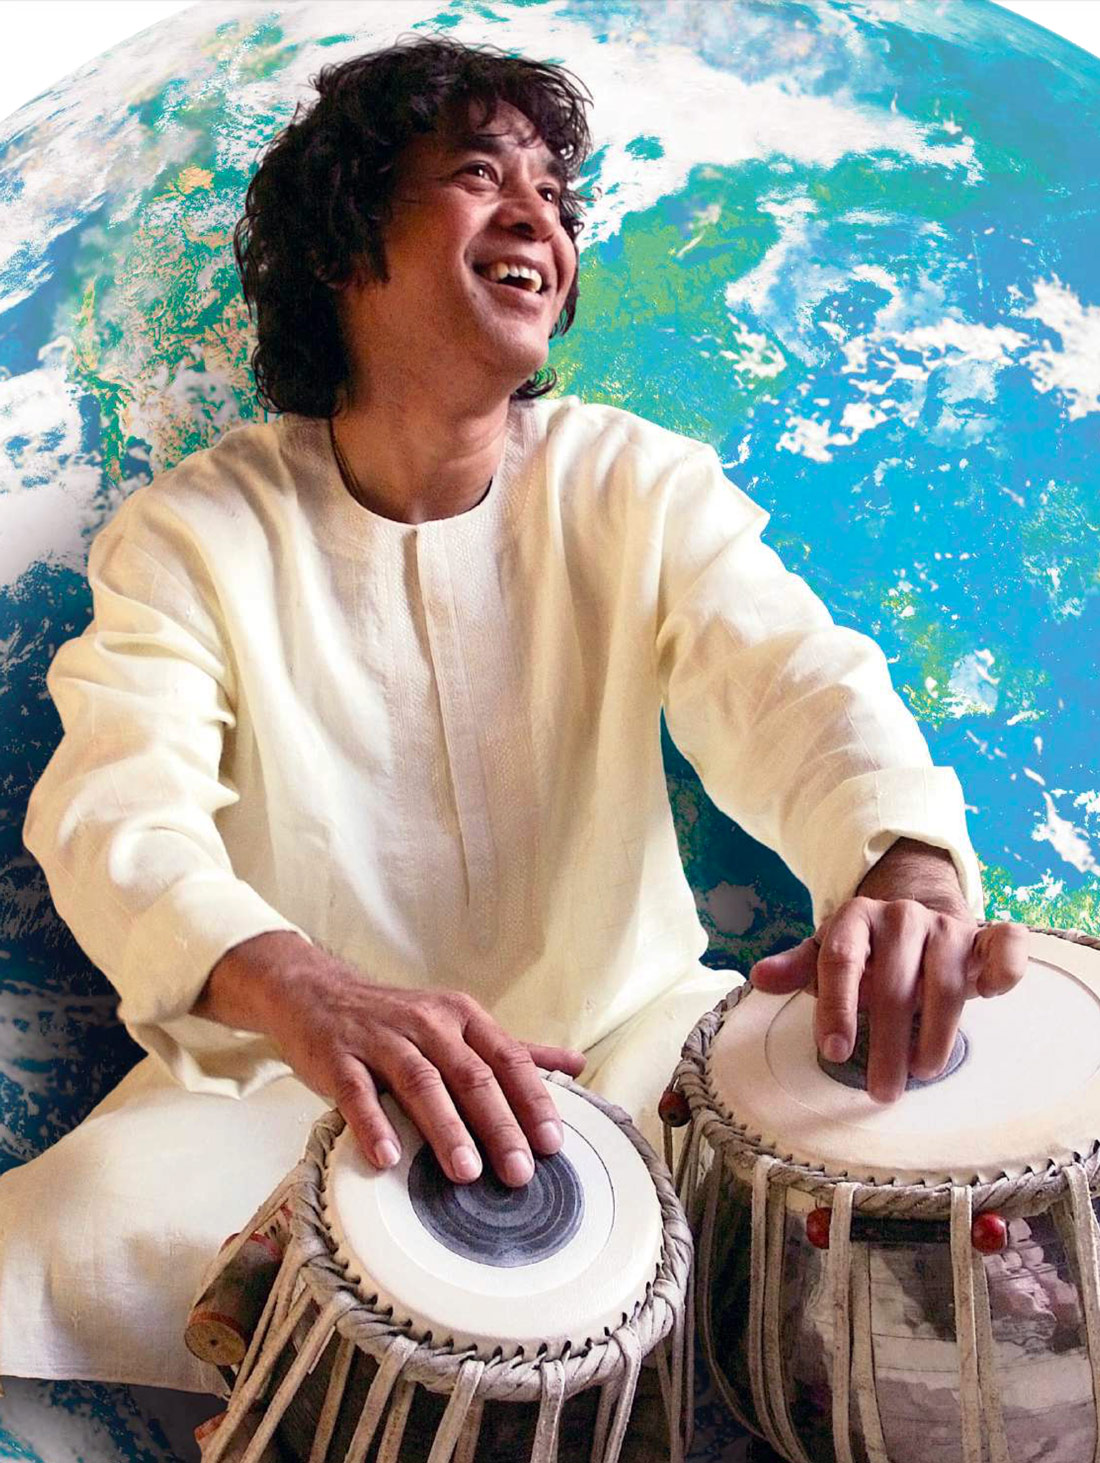 Zakir Hussain Hussein Drummerworld